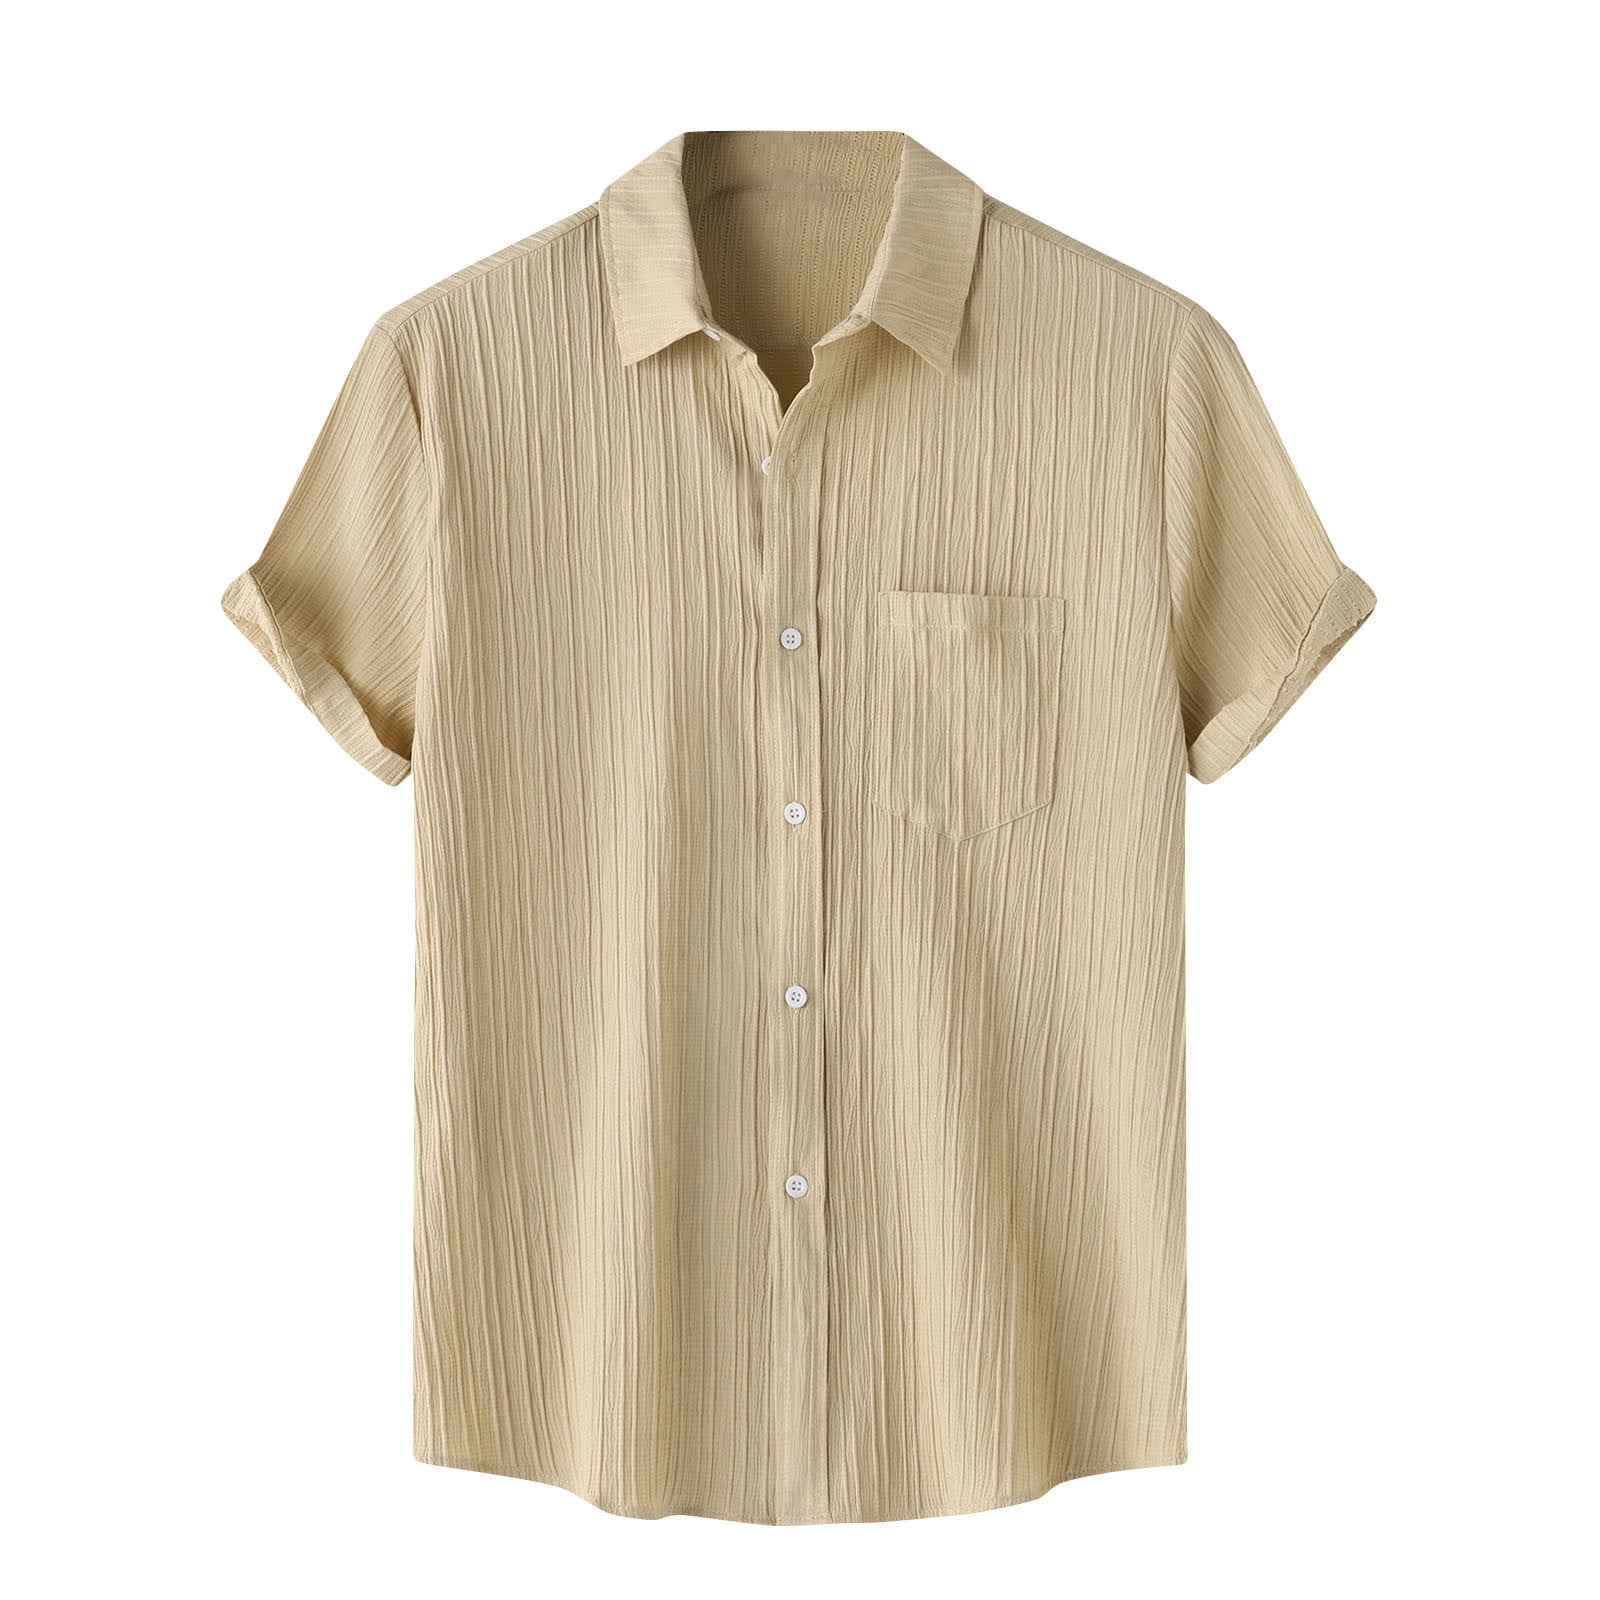 Men's Stripe Print Cotton Linen Shirt Short Sleeve Hippie Casual Beach ...